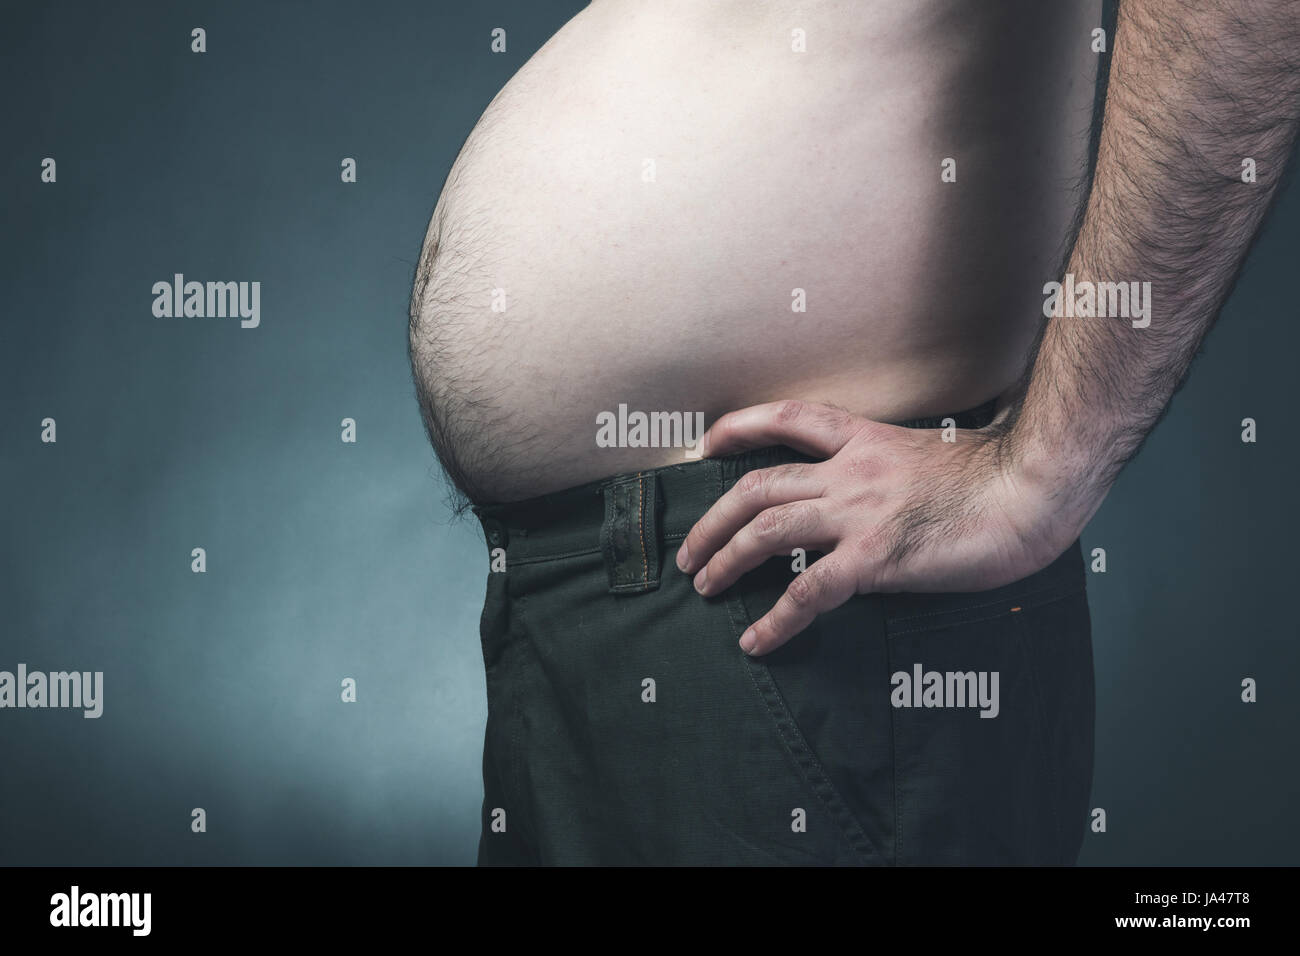 Mann Mit Dicken Fetten Bauch Stockfotografie Alamy 